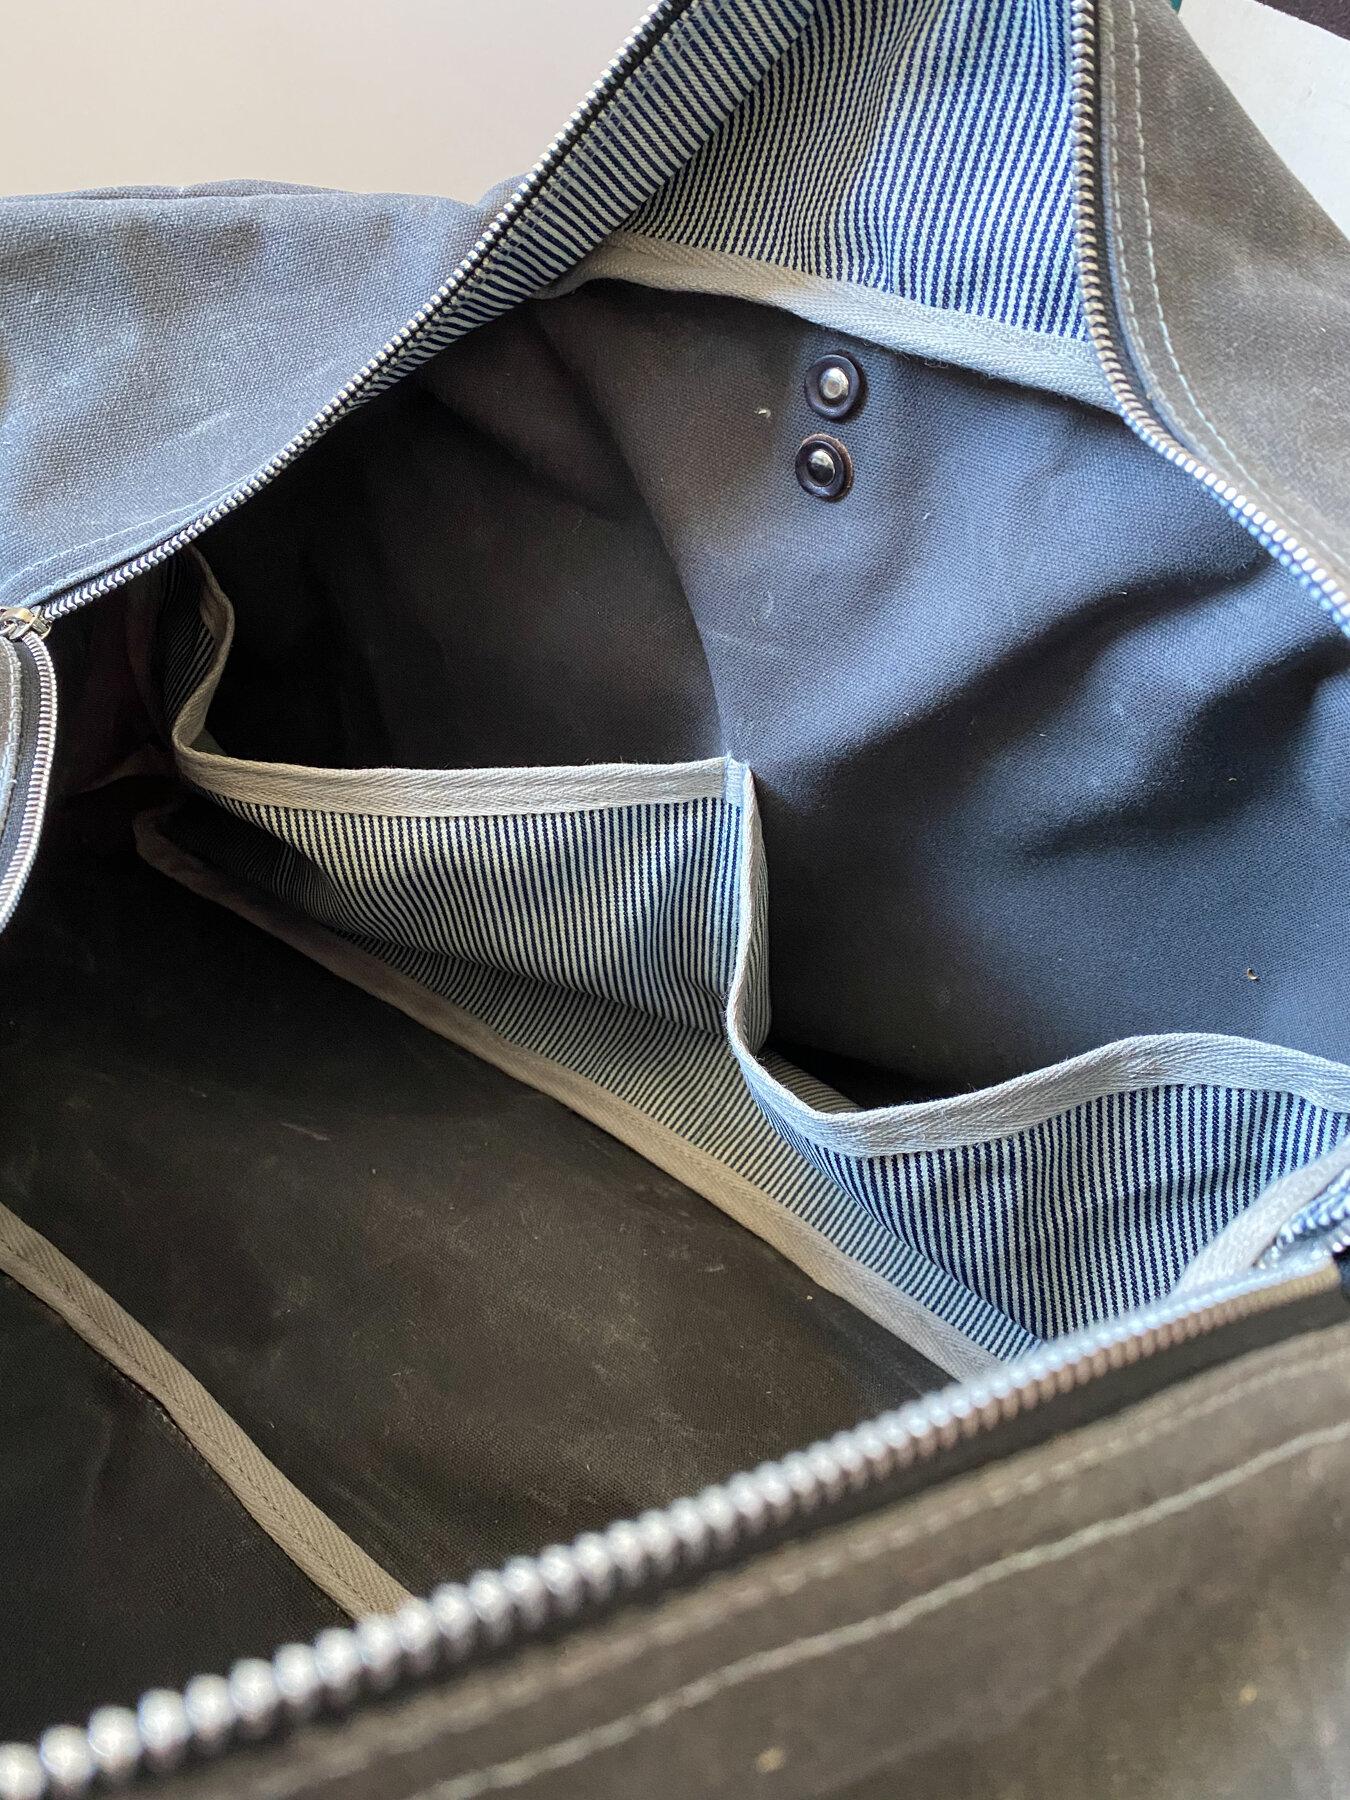 Waxed canvas duffel bag interior, railroad denim pockets detail.